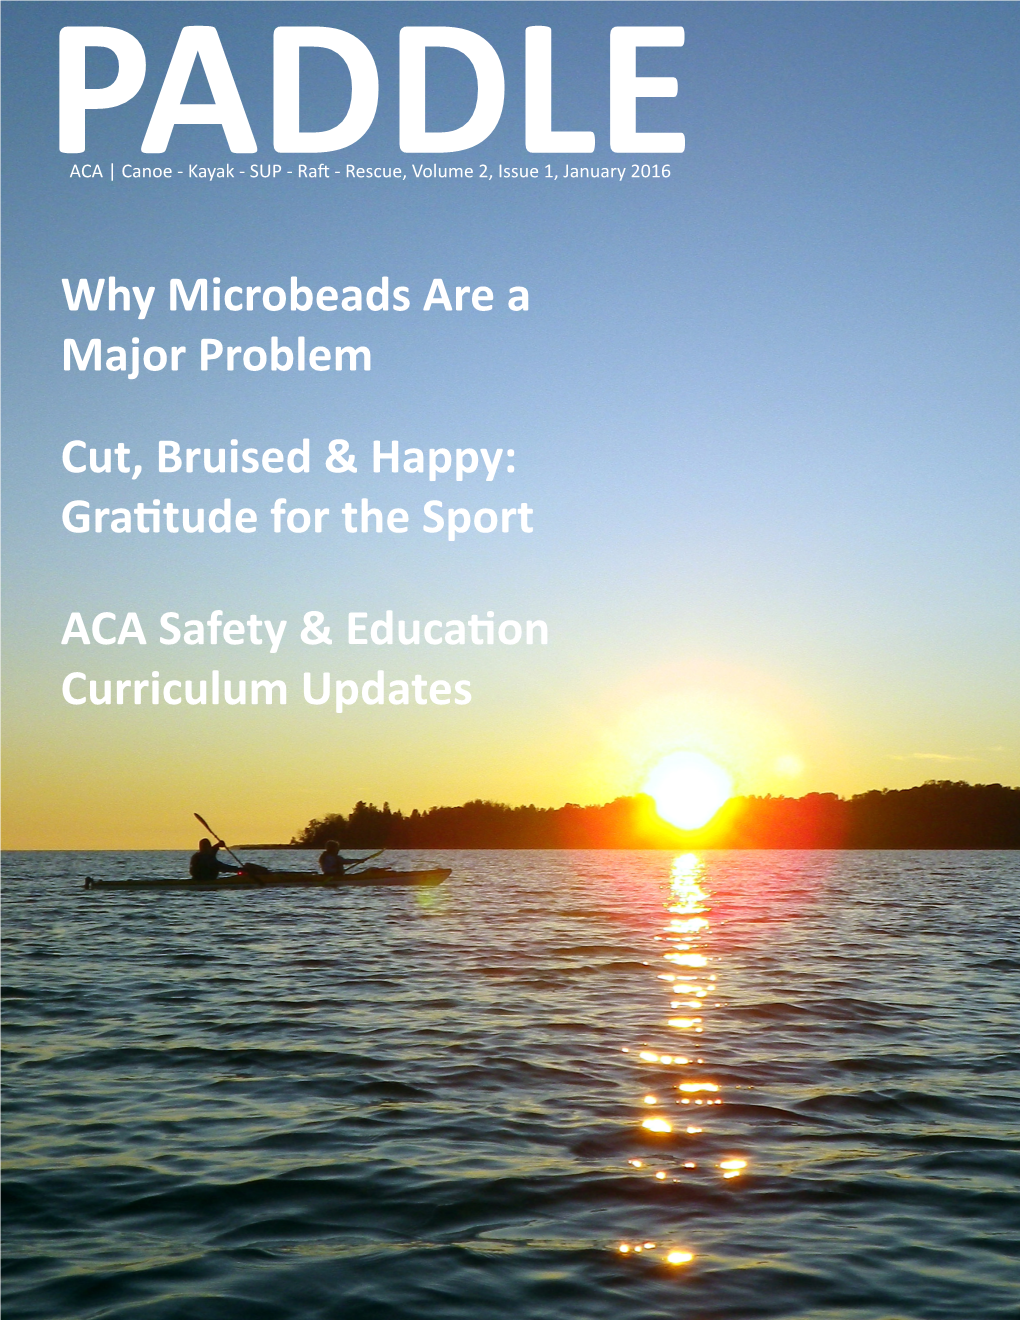 ACA Safety & Education Curriculum Updates Cut, Bruised & Happy